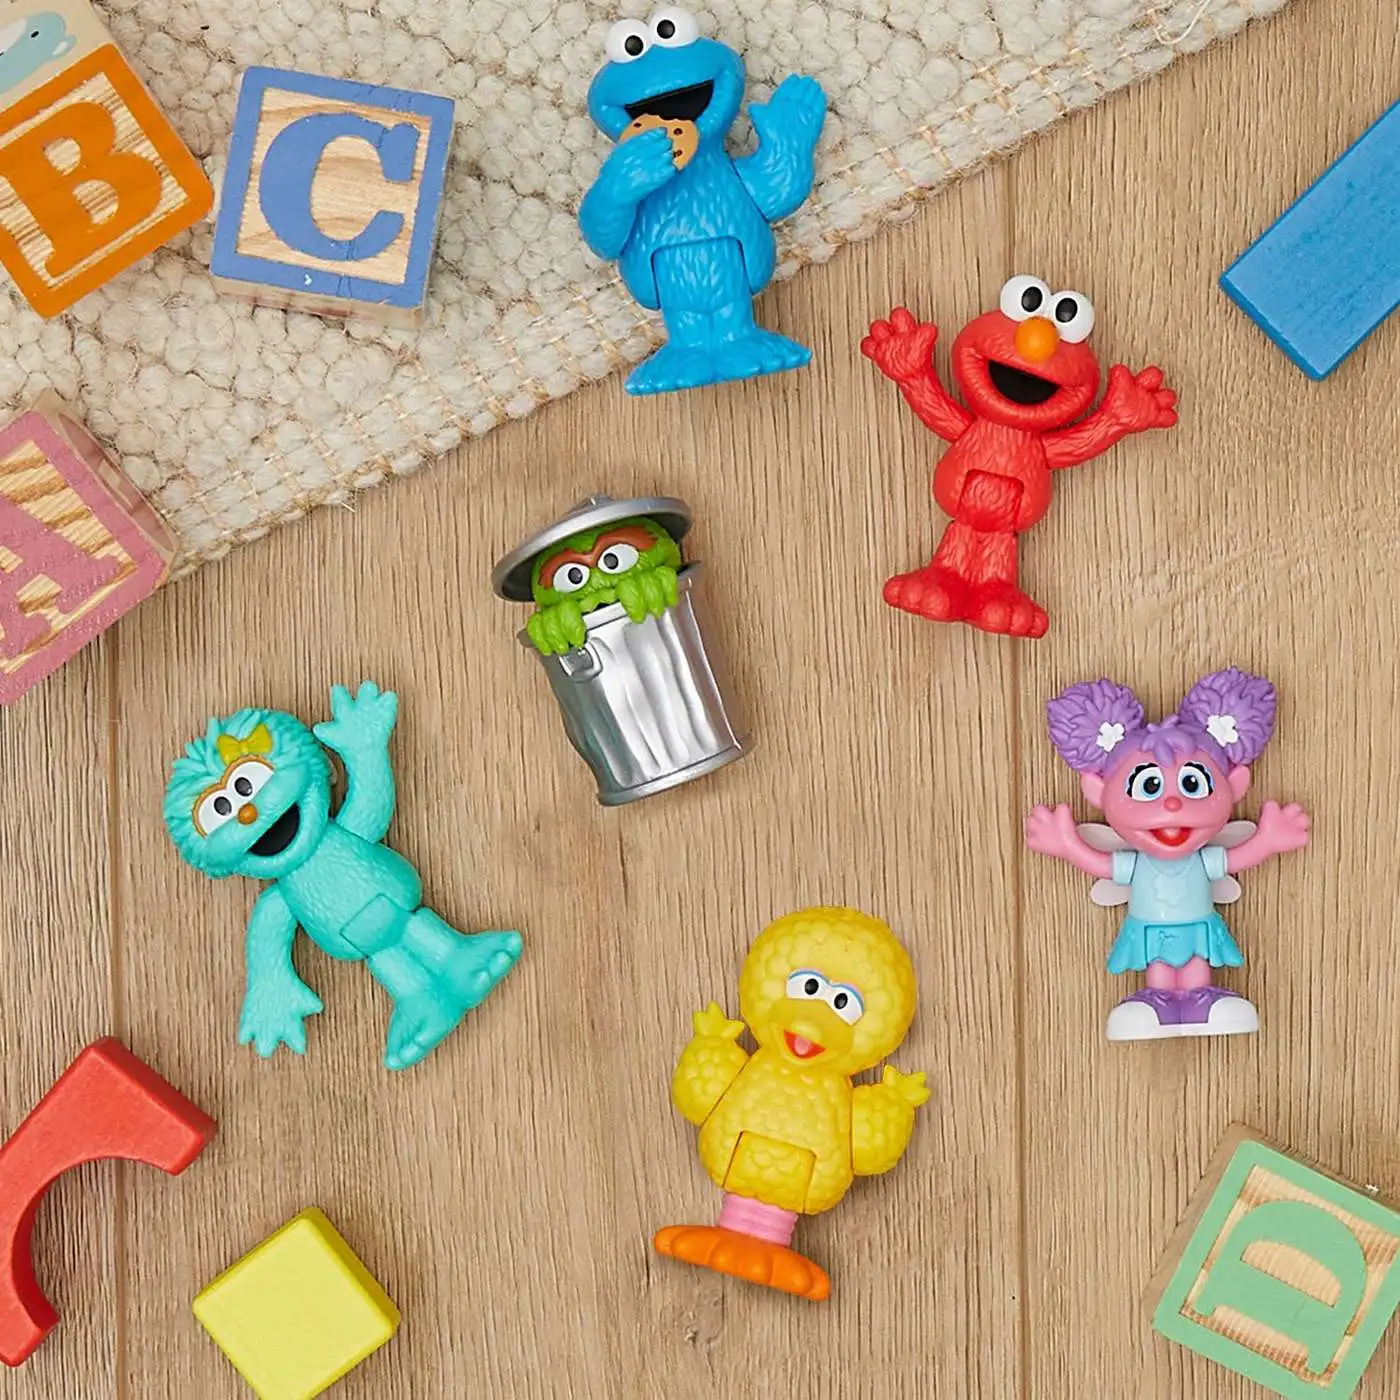 Sesame Street Elmo, Cookie Monster, Grover, Oscar the Grouch Abby Cadabby  Figure 5-Pack Playskool - ToyWiz